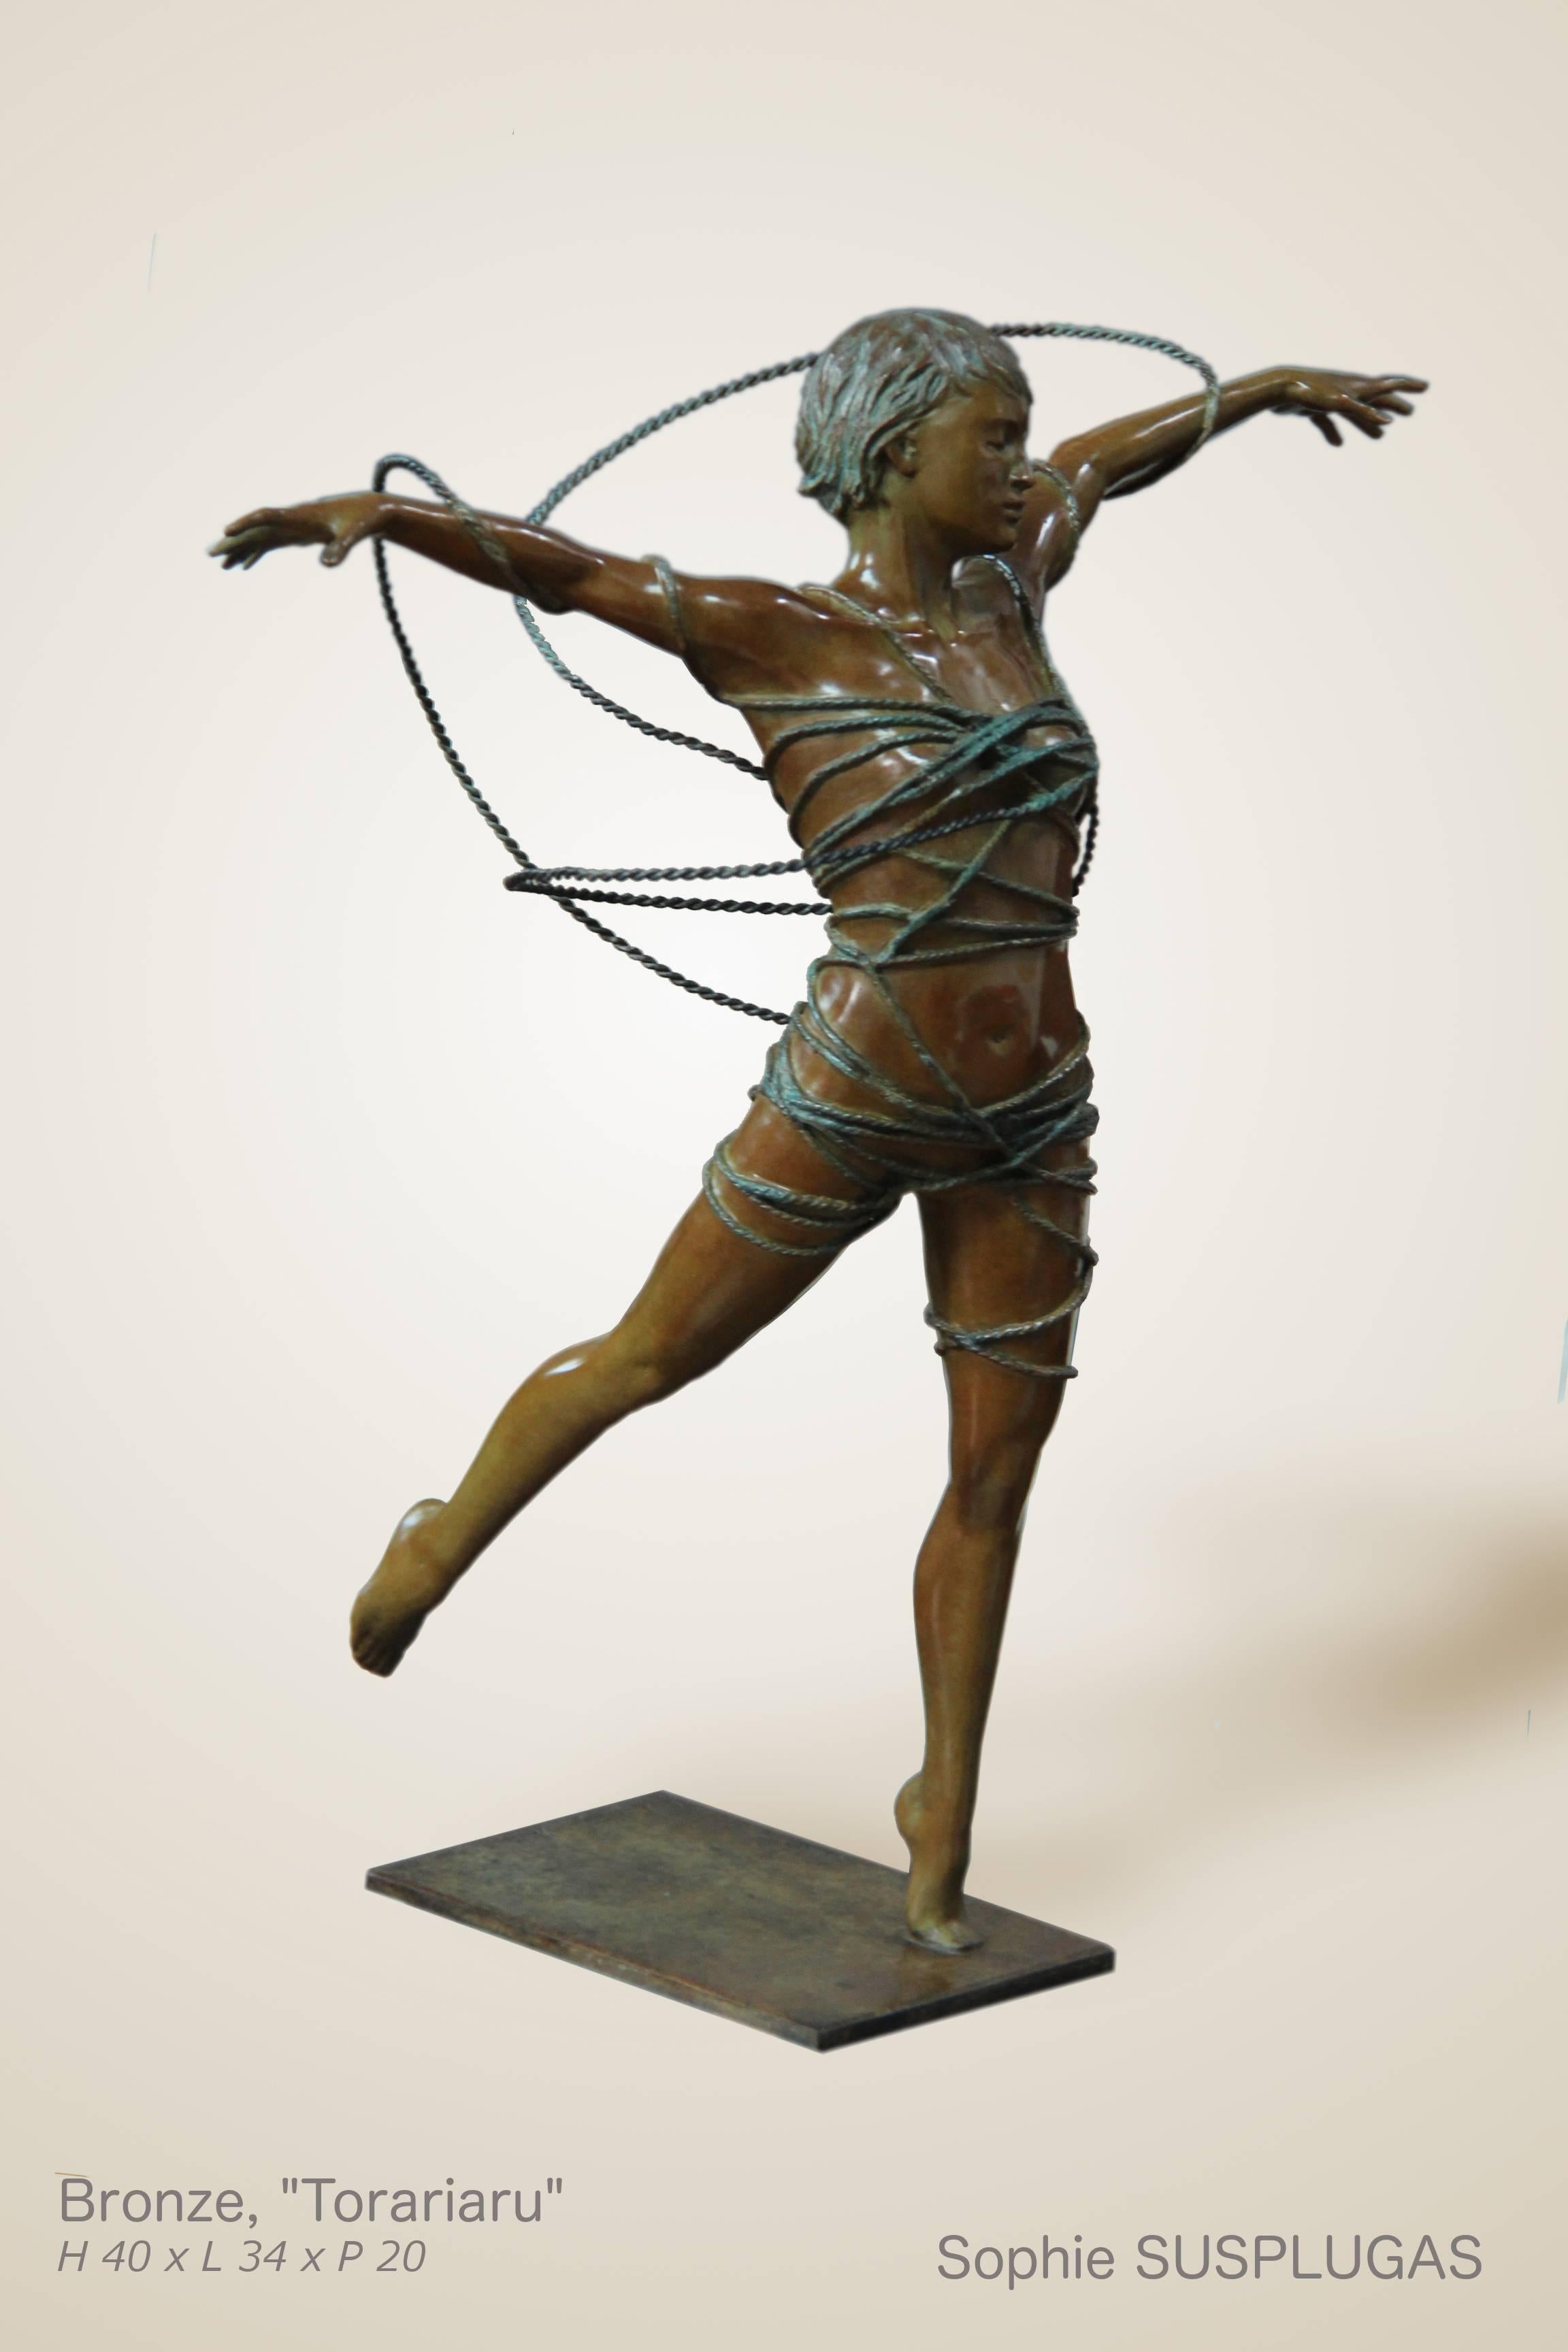 Sophie Susplugas Figurative Sculpture - Torariaru bronze 1/8